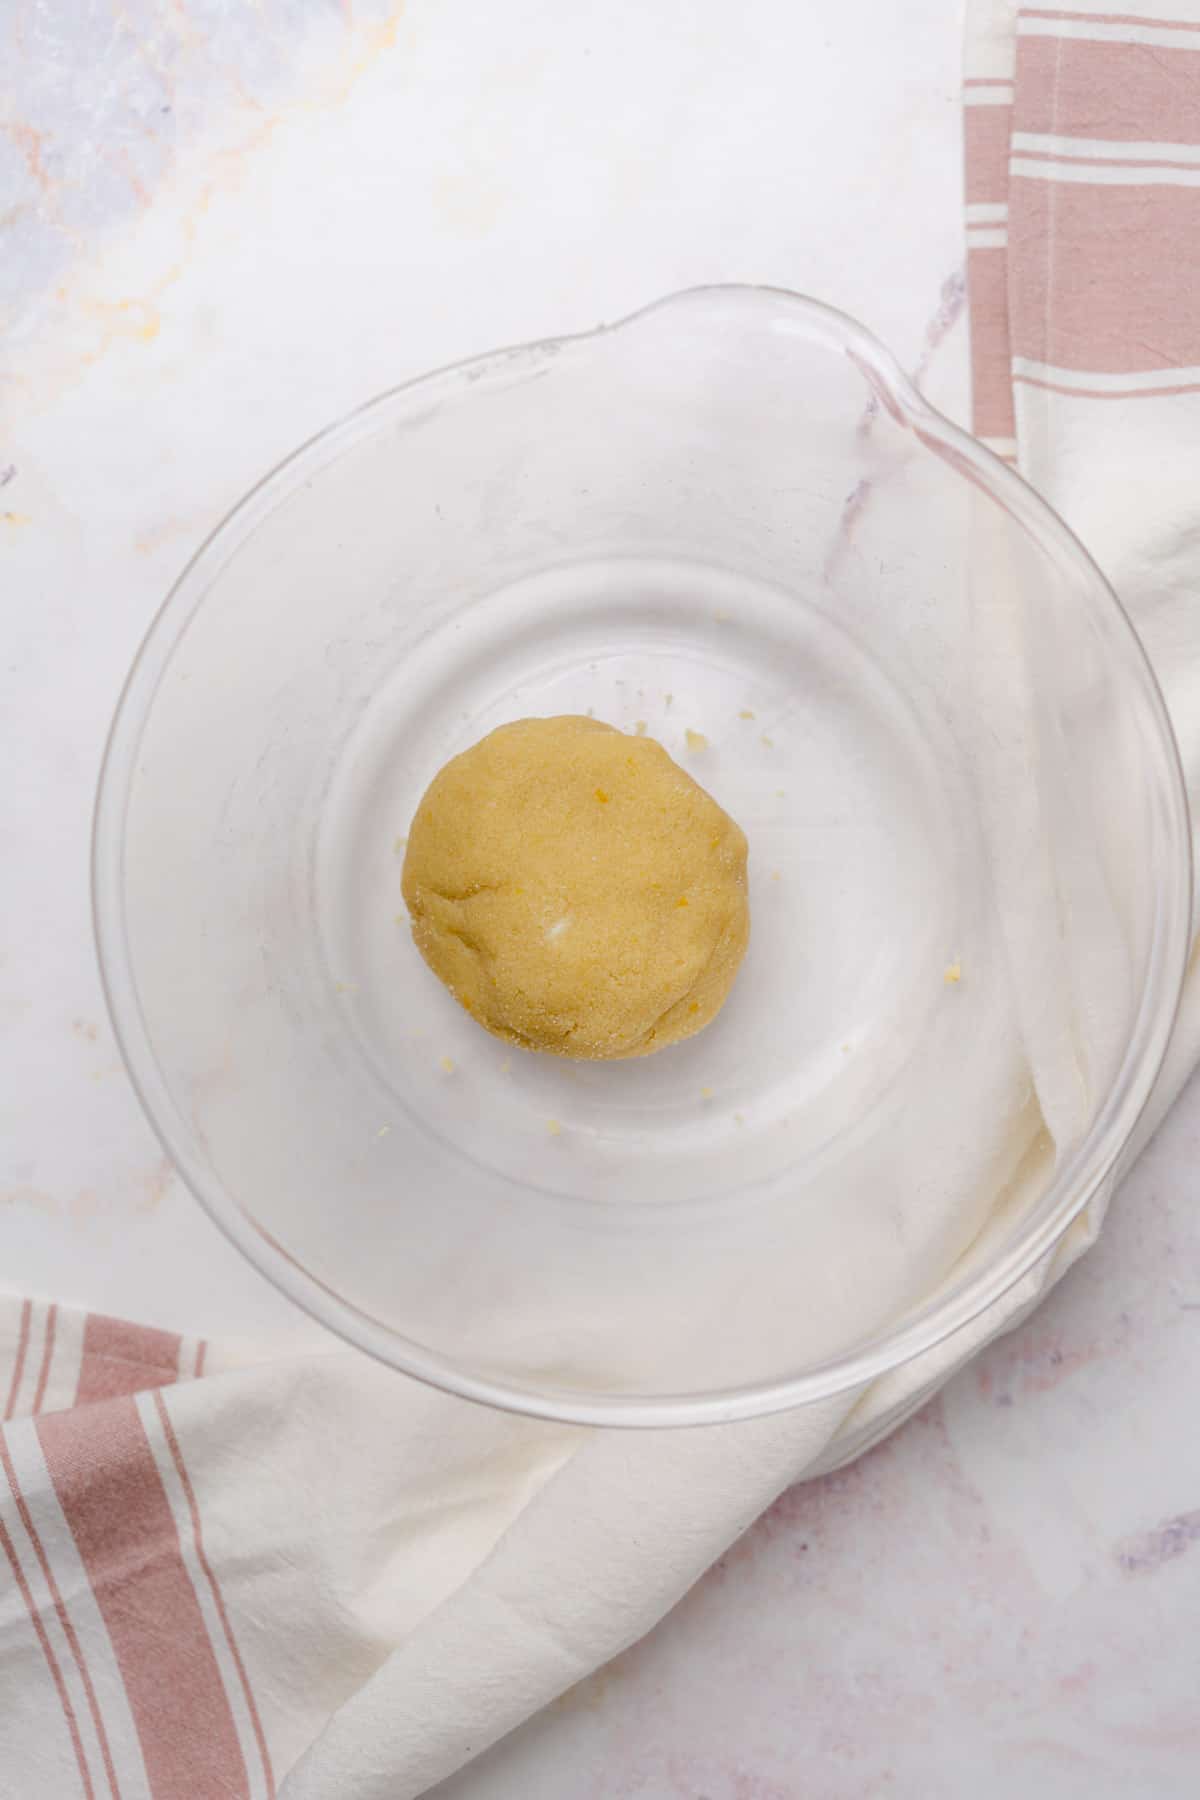 ball of shortbread crust dough for a tart